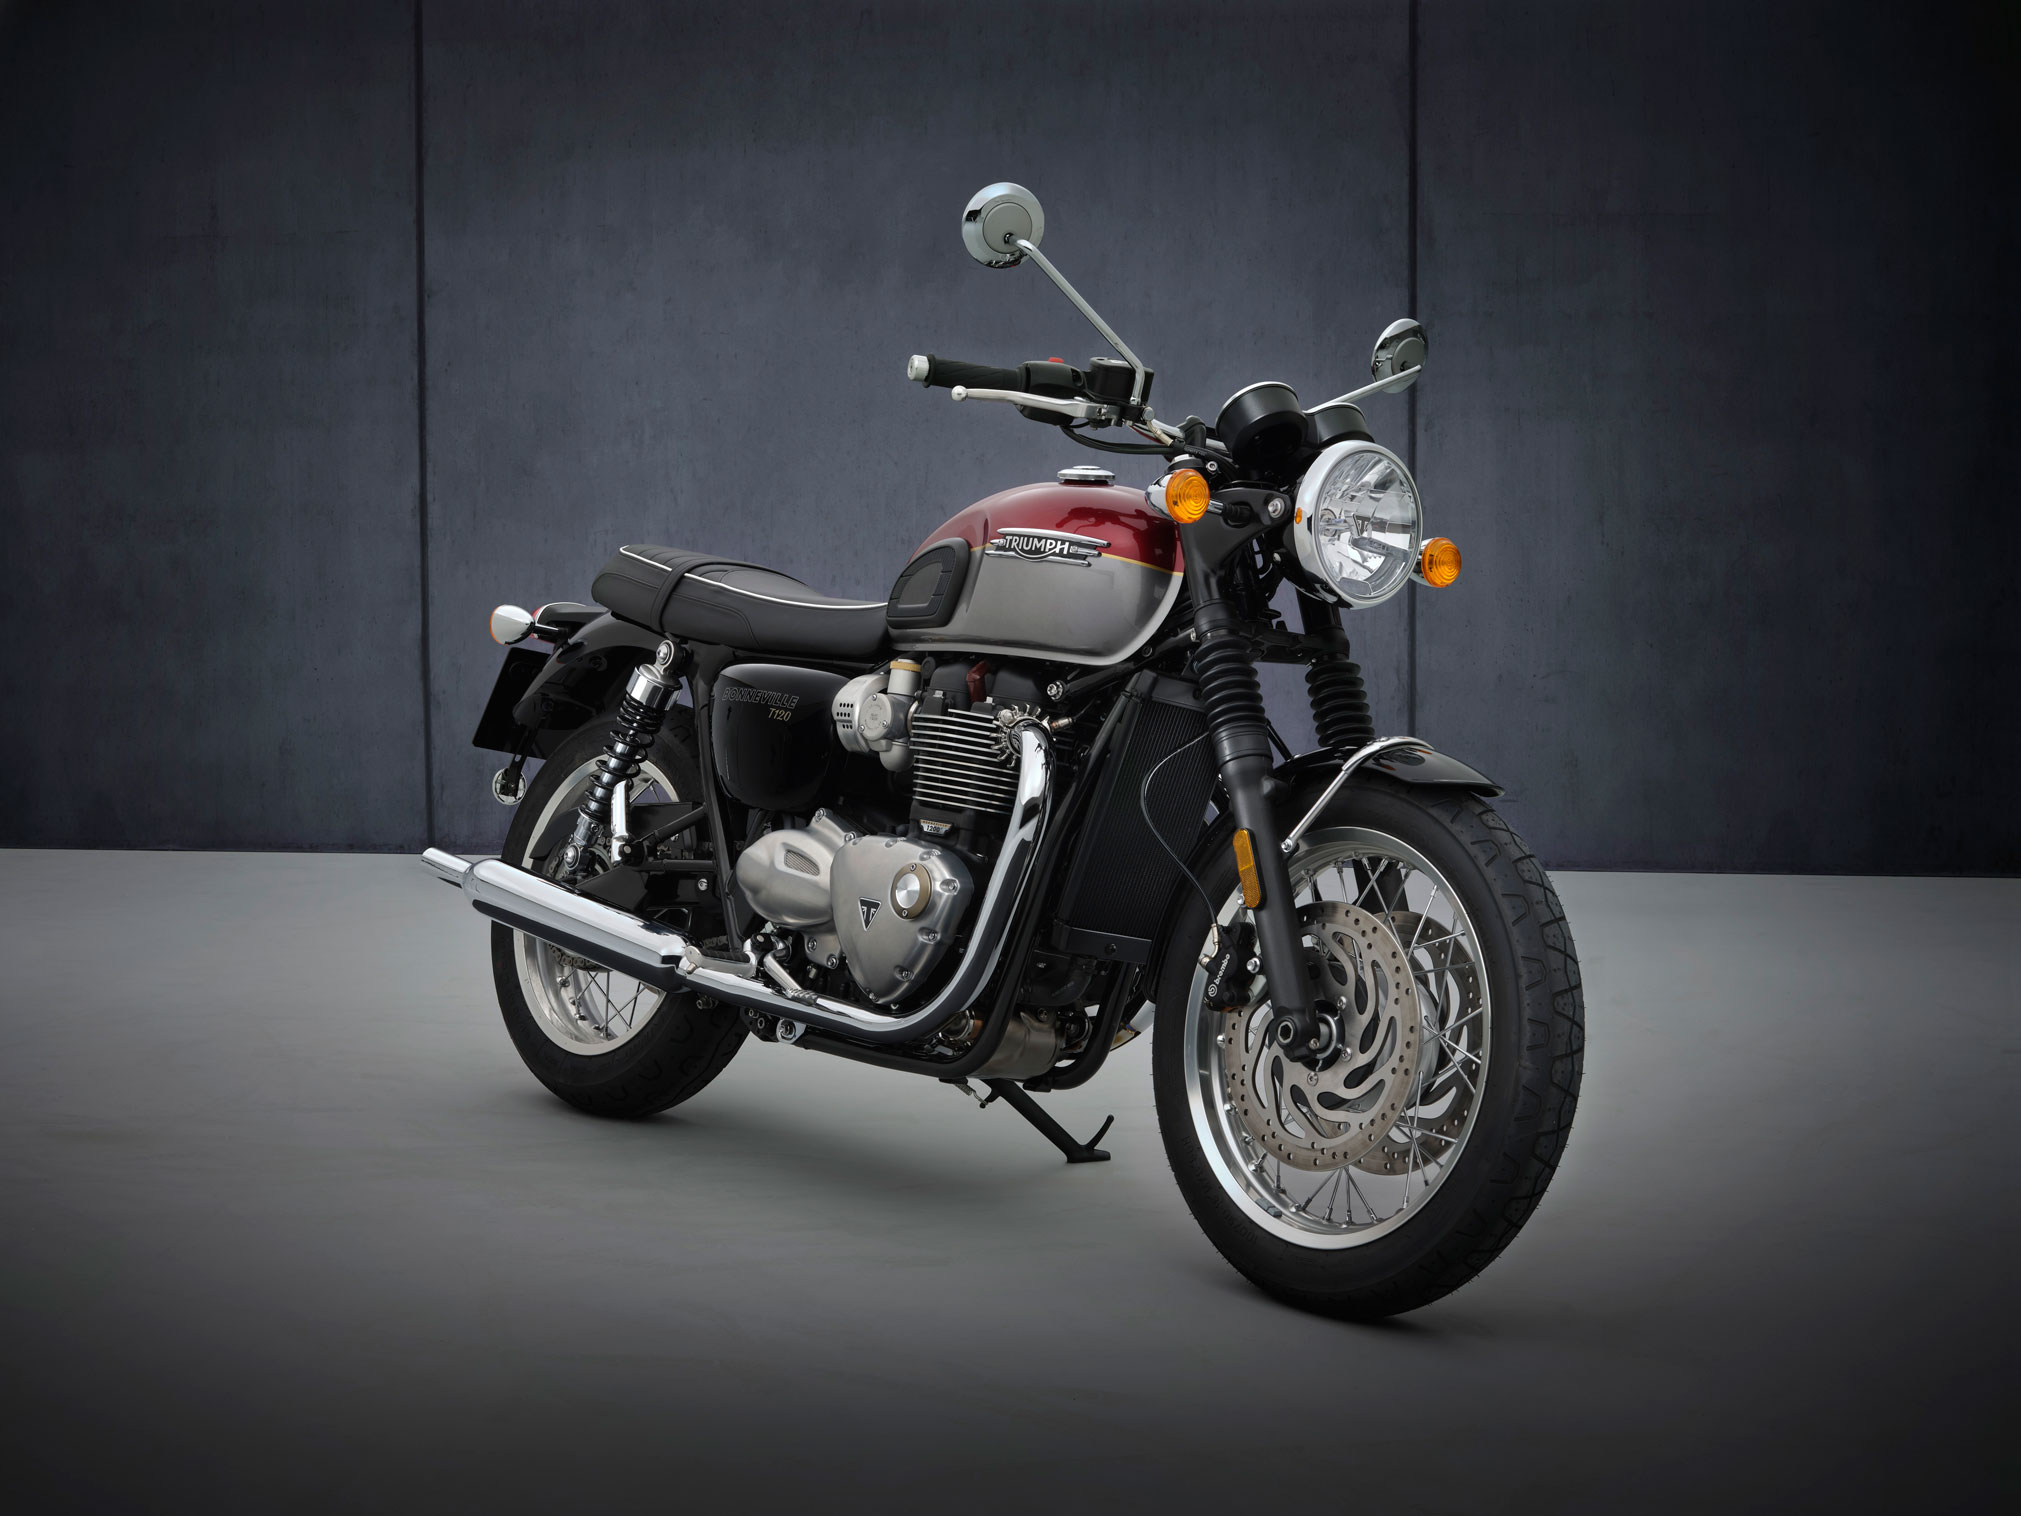 2021 Triumph Bonneville T120 Guide • Total Motorcycle